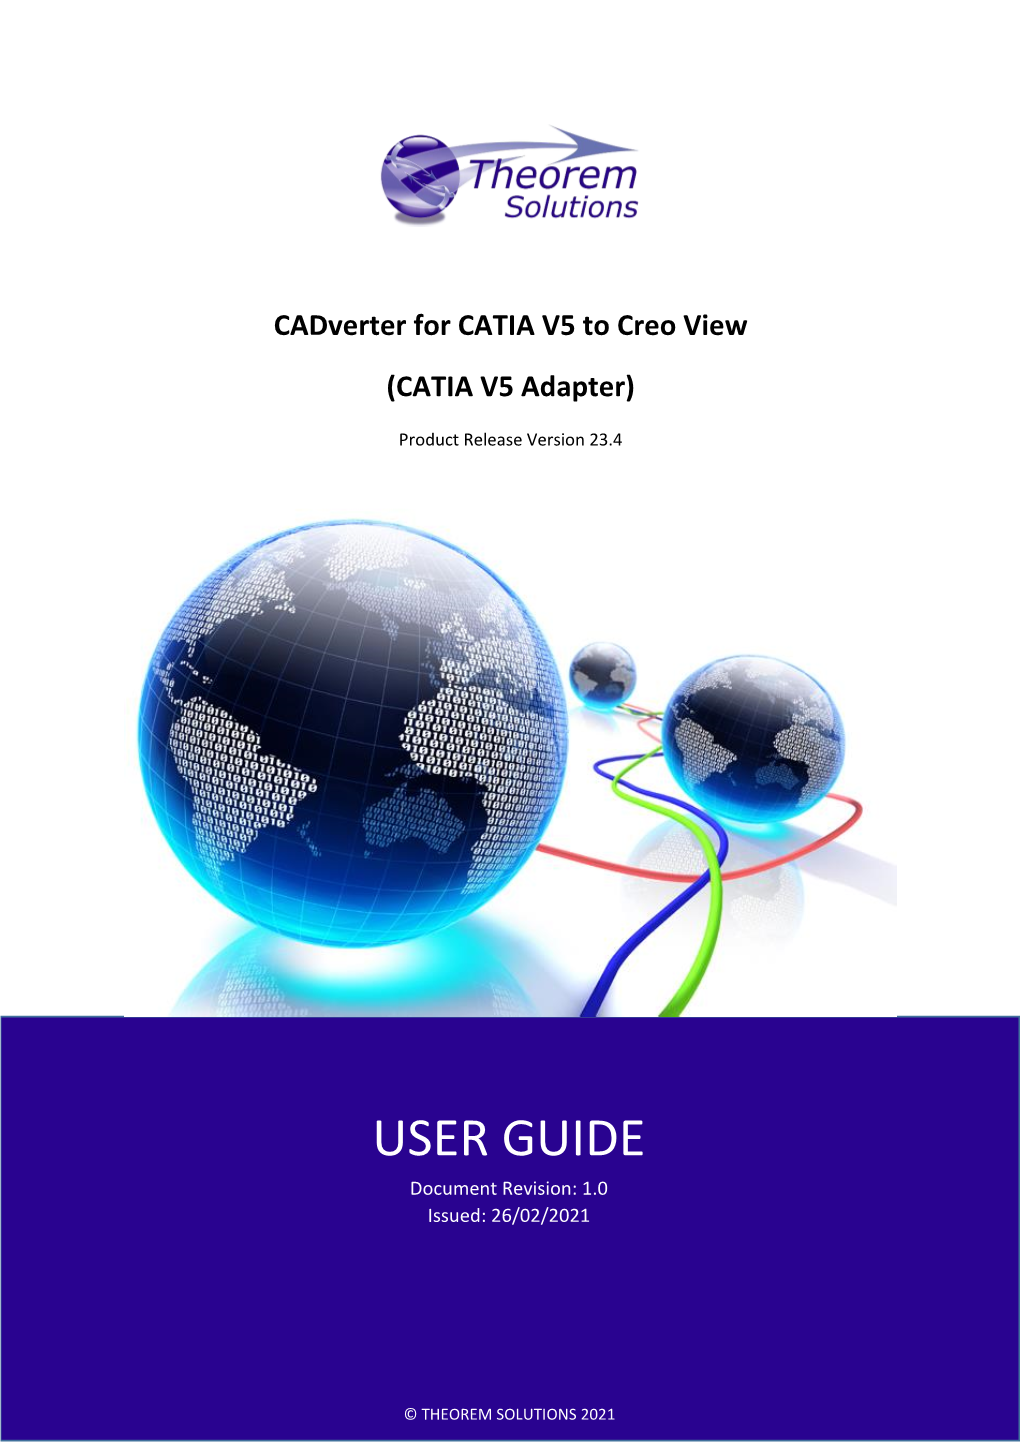 Cadverter for CATIA V5 to Creo View (CATIA V5 Adapter)